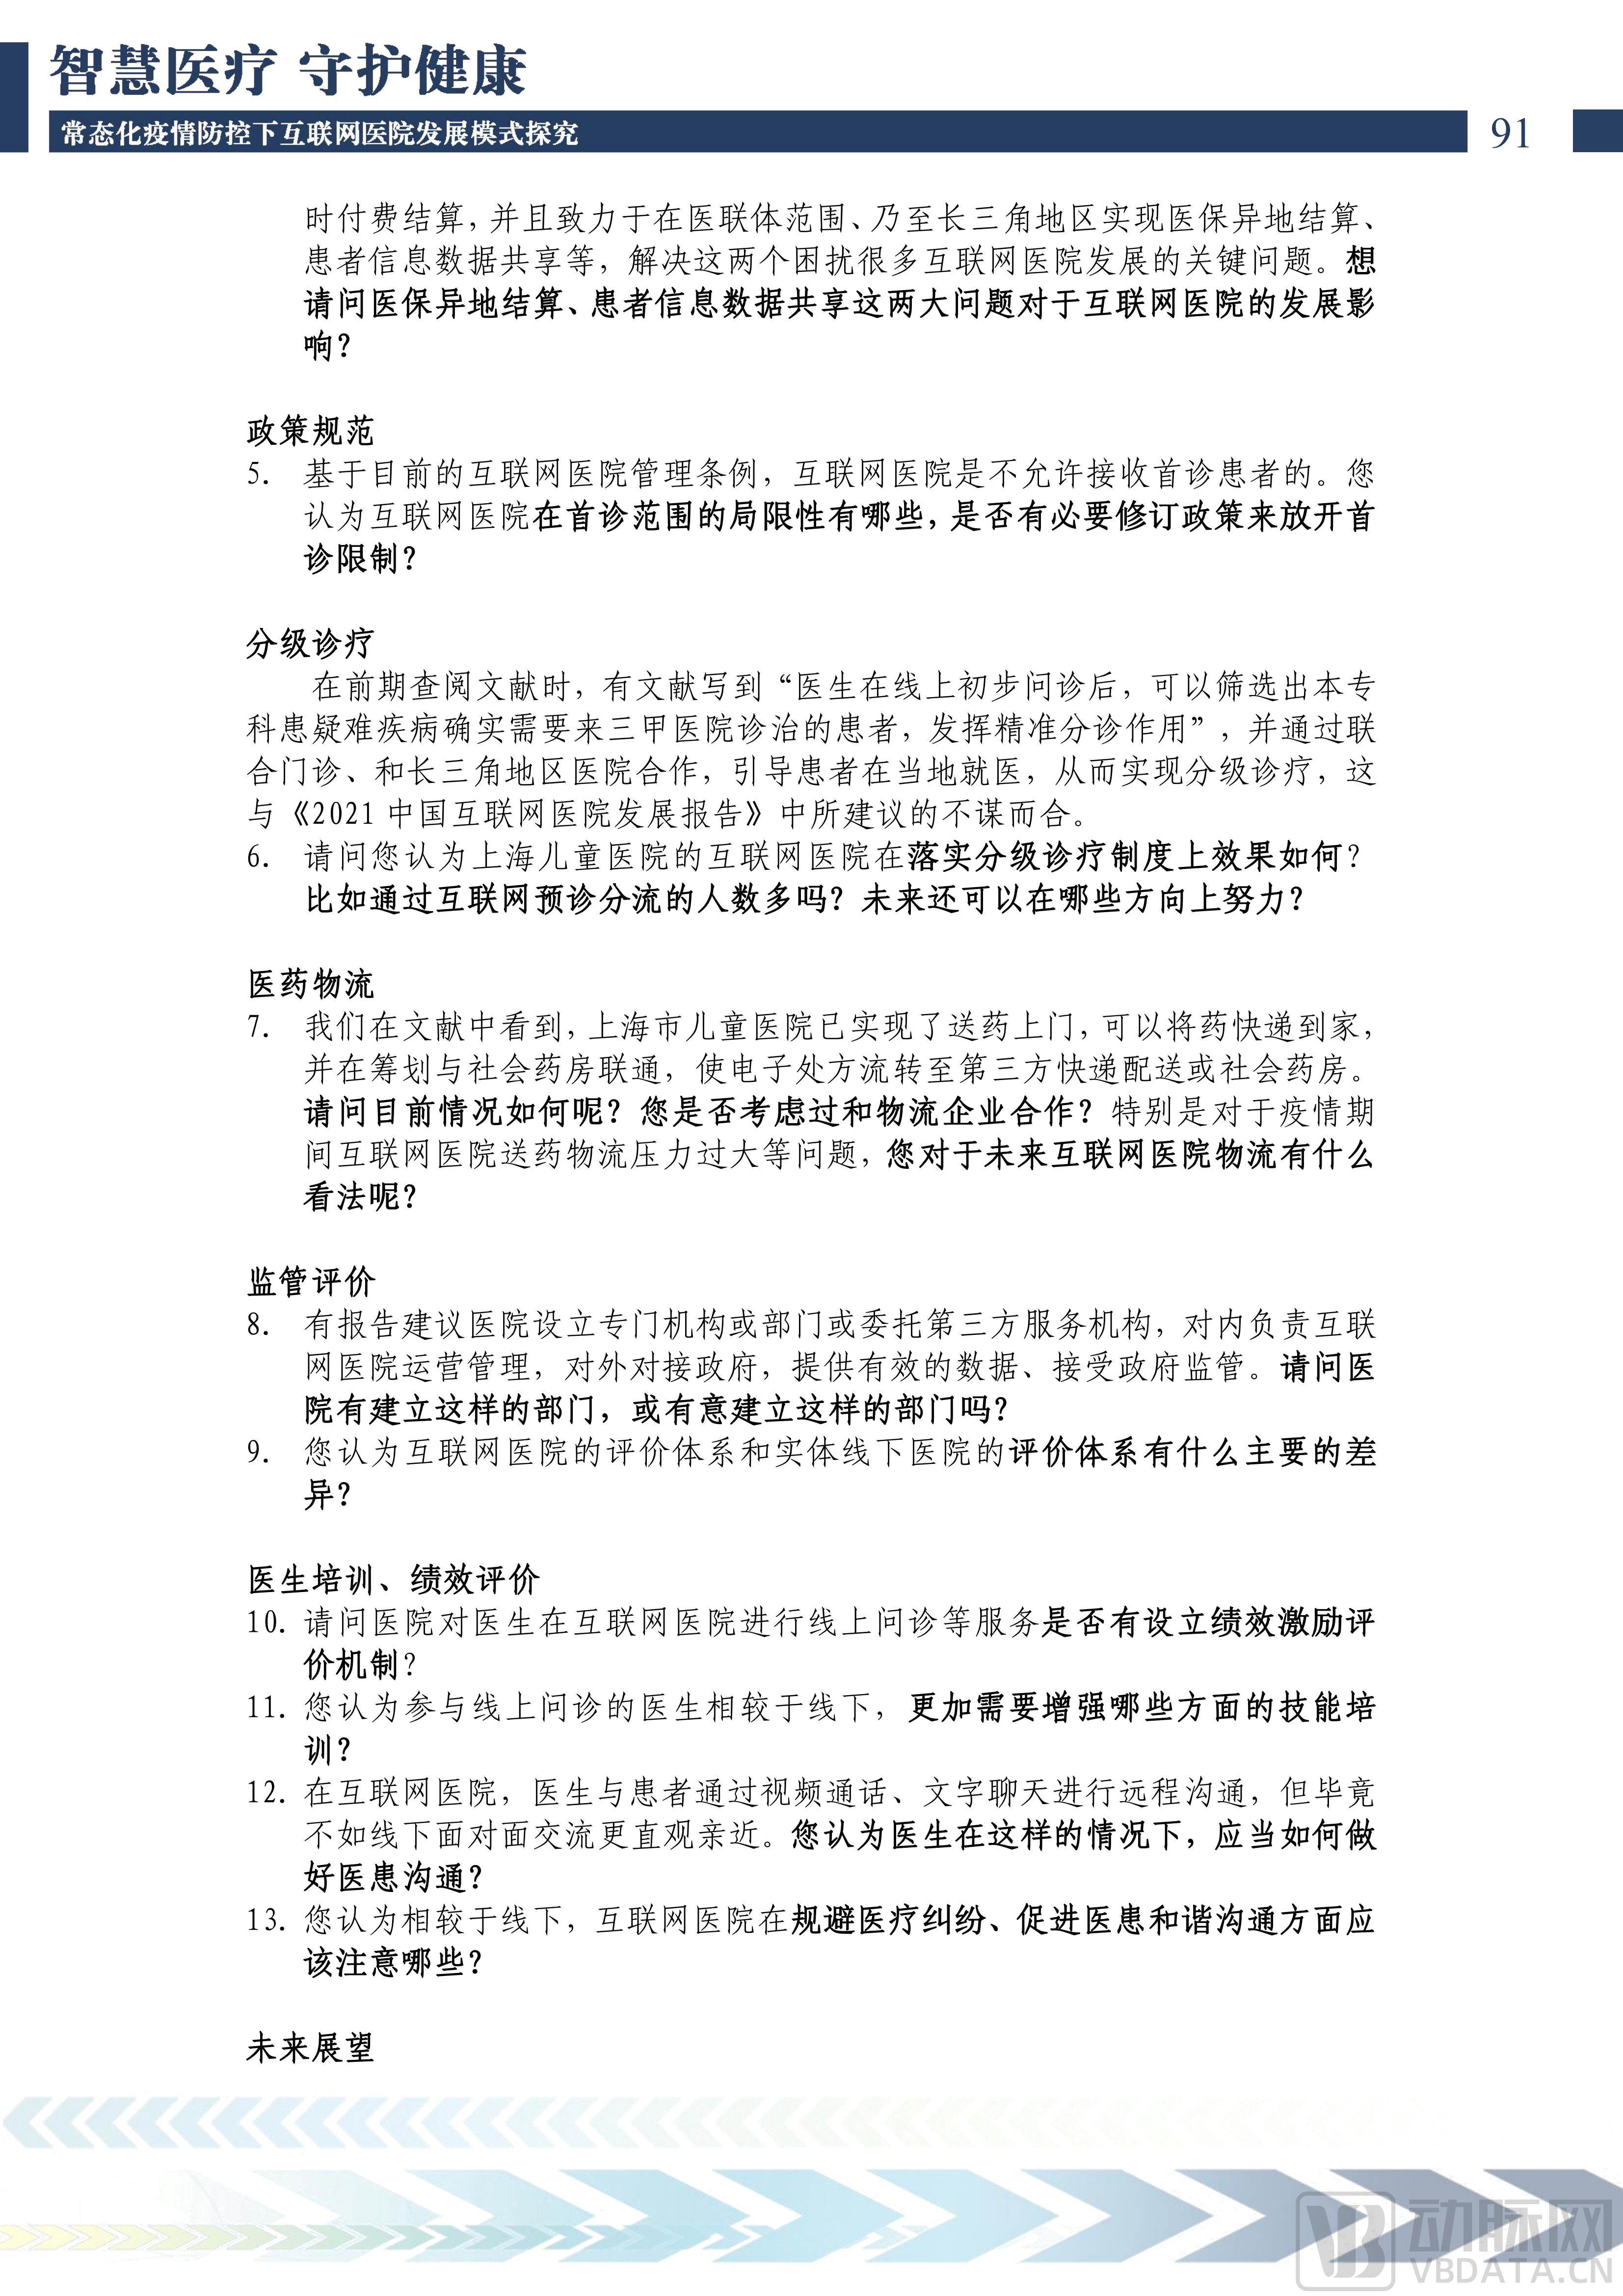 2022中国互联网医院发展调研报告(1)_92.png